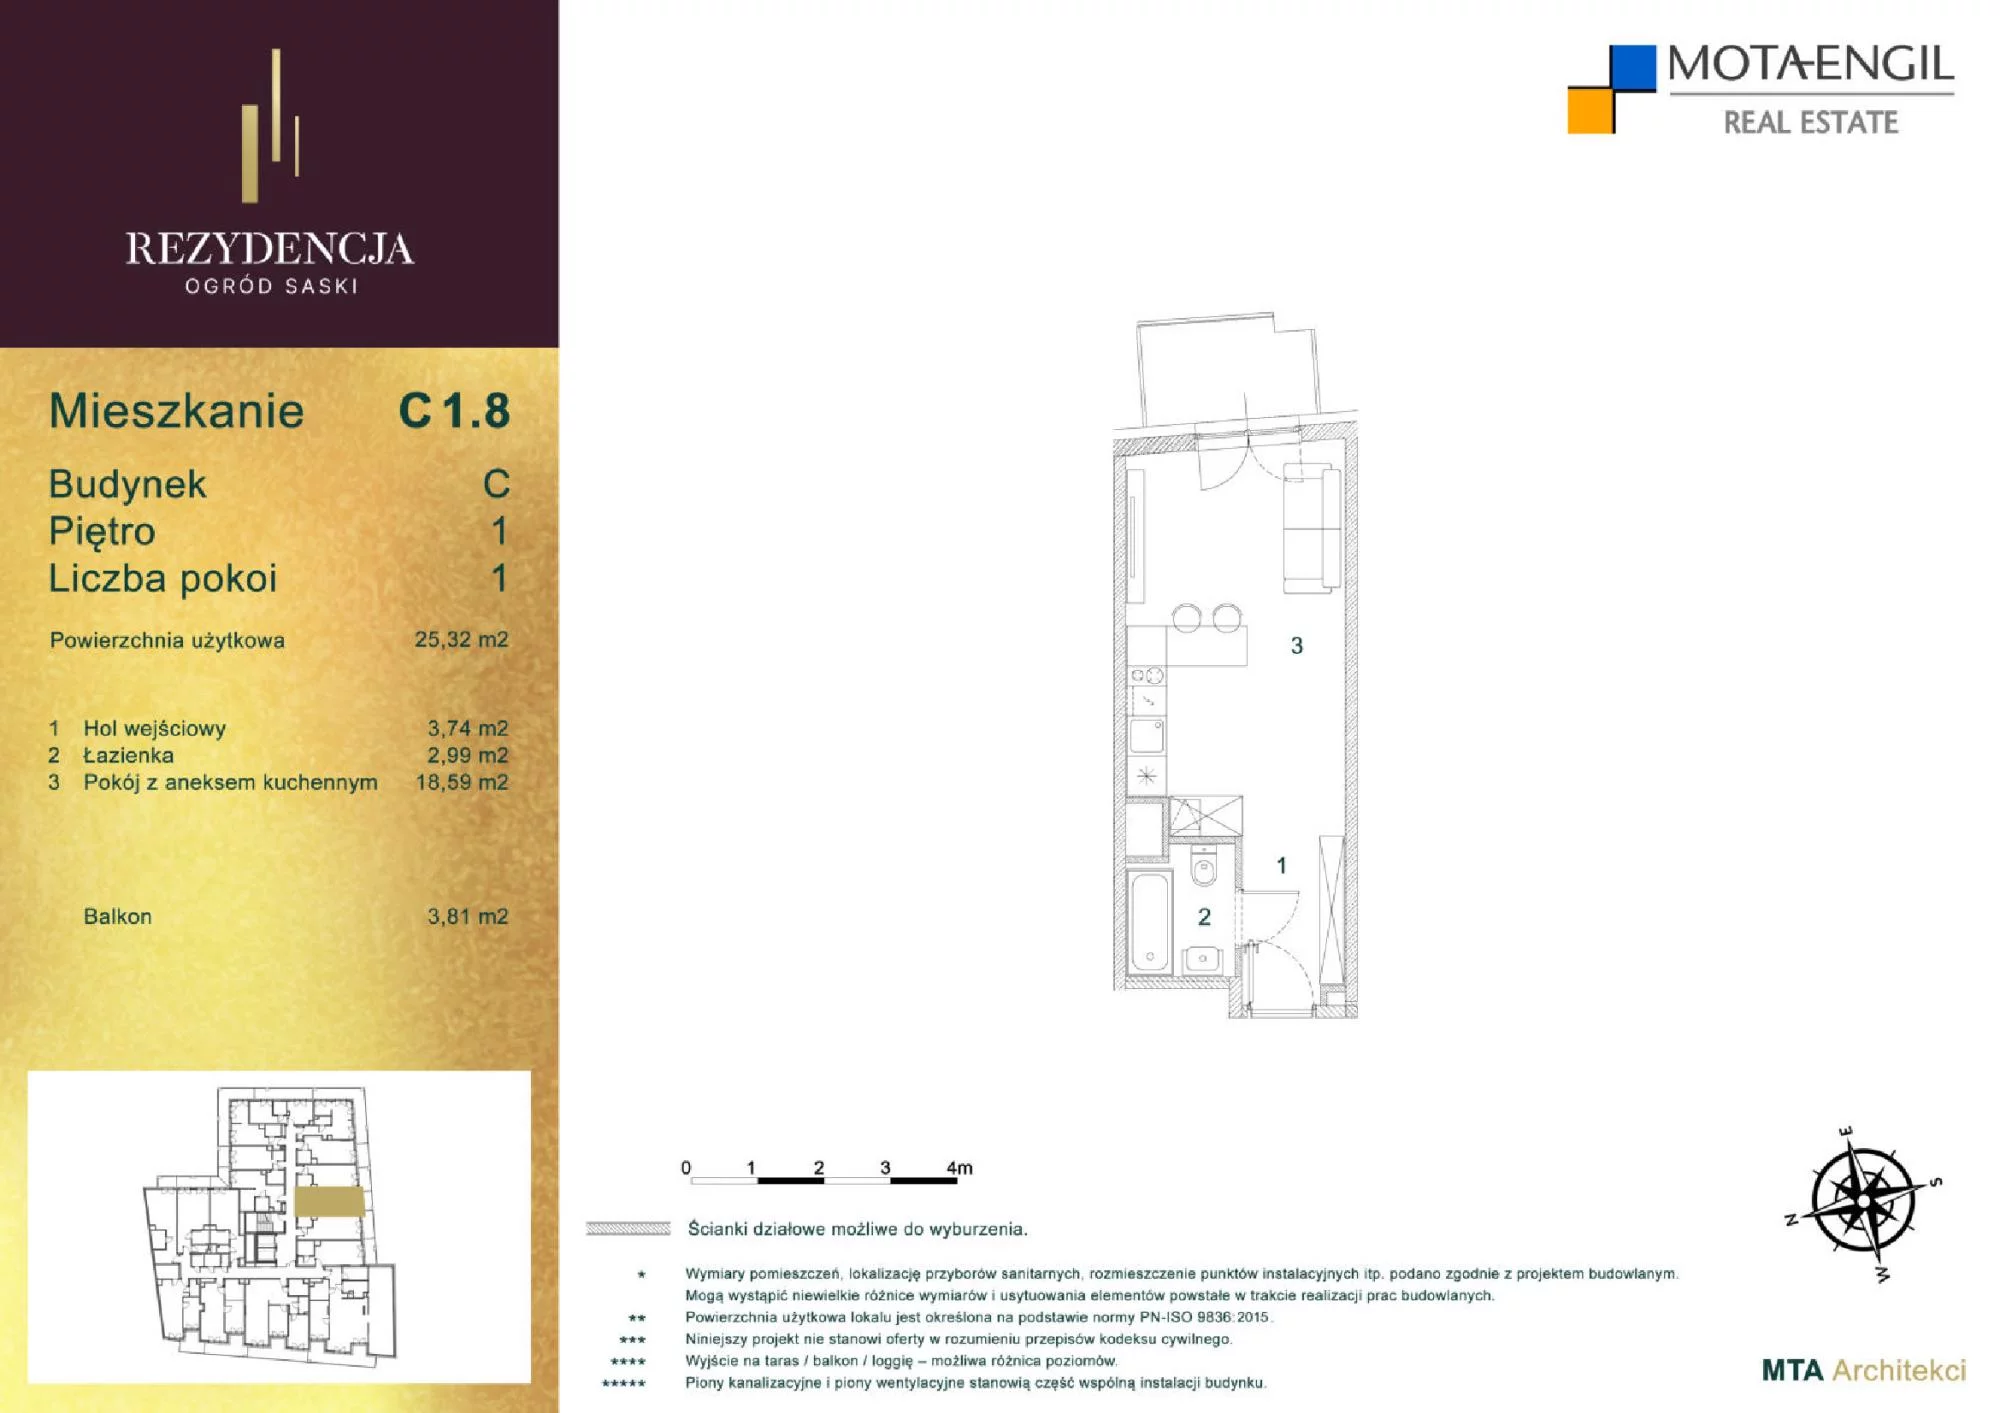 Mieszkanie 25,32 m², piętro 1, oferta nr C1.8, Rezydencja Ogród Saski, Lublin, Wieniawa, ul. Jasna 7, 7A